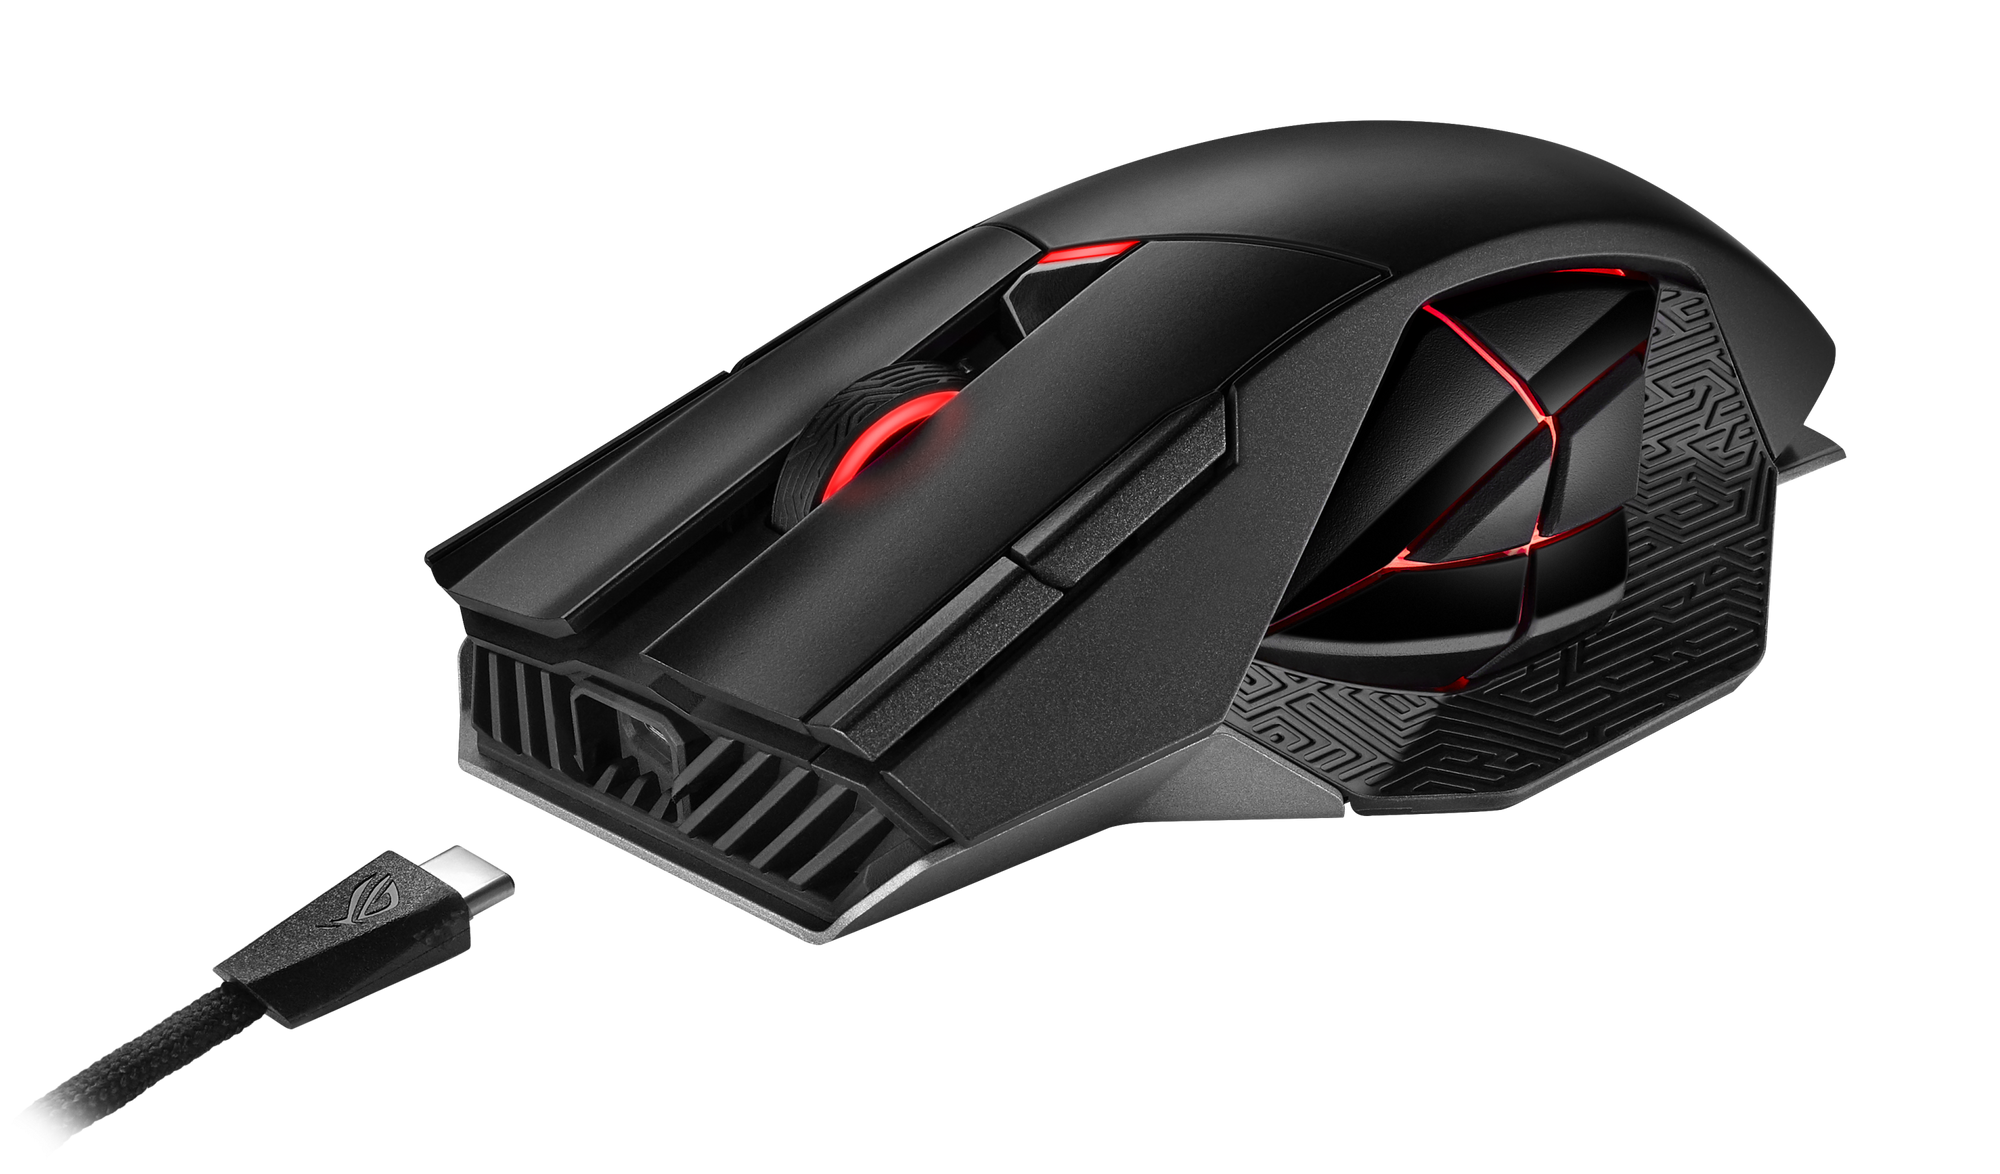 ASUS ROG Spatha X Gaming Mouse 2